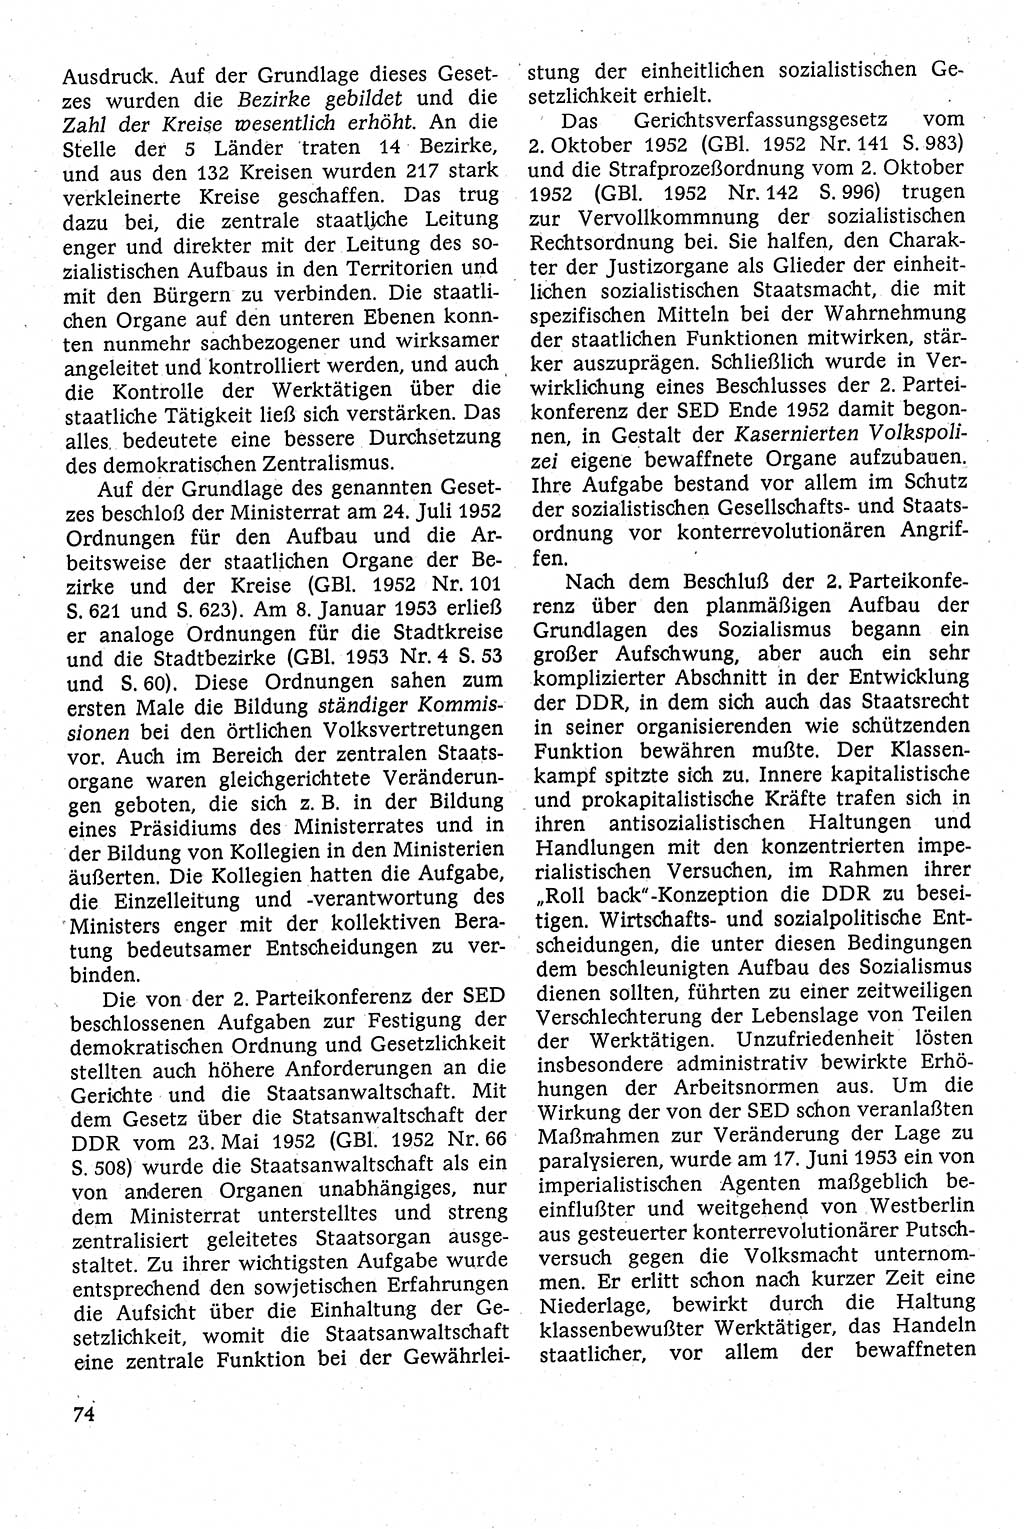 Staatsrecht der DDR [Deutsche Demokratische Republik (DDR)], Lehrbuch 1984, Seite 74 (St.-R. DDR Lb. 1984, S. 74)